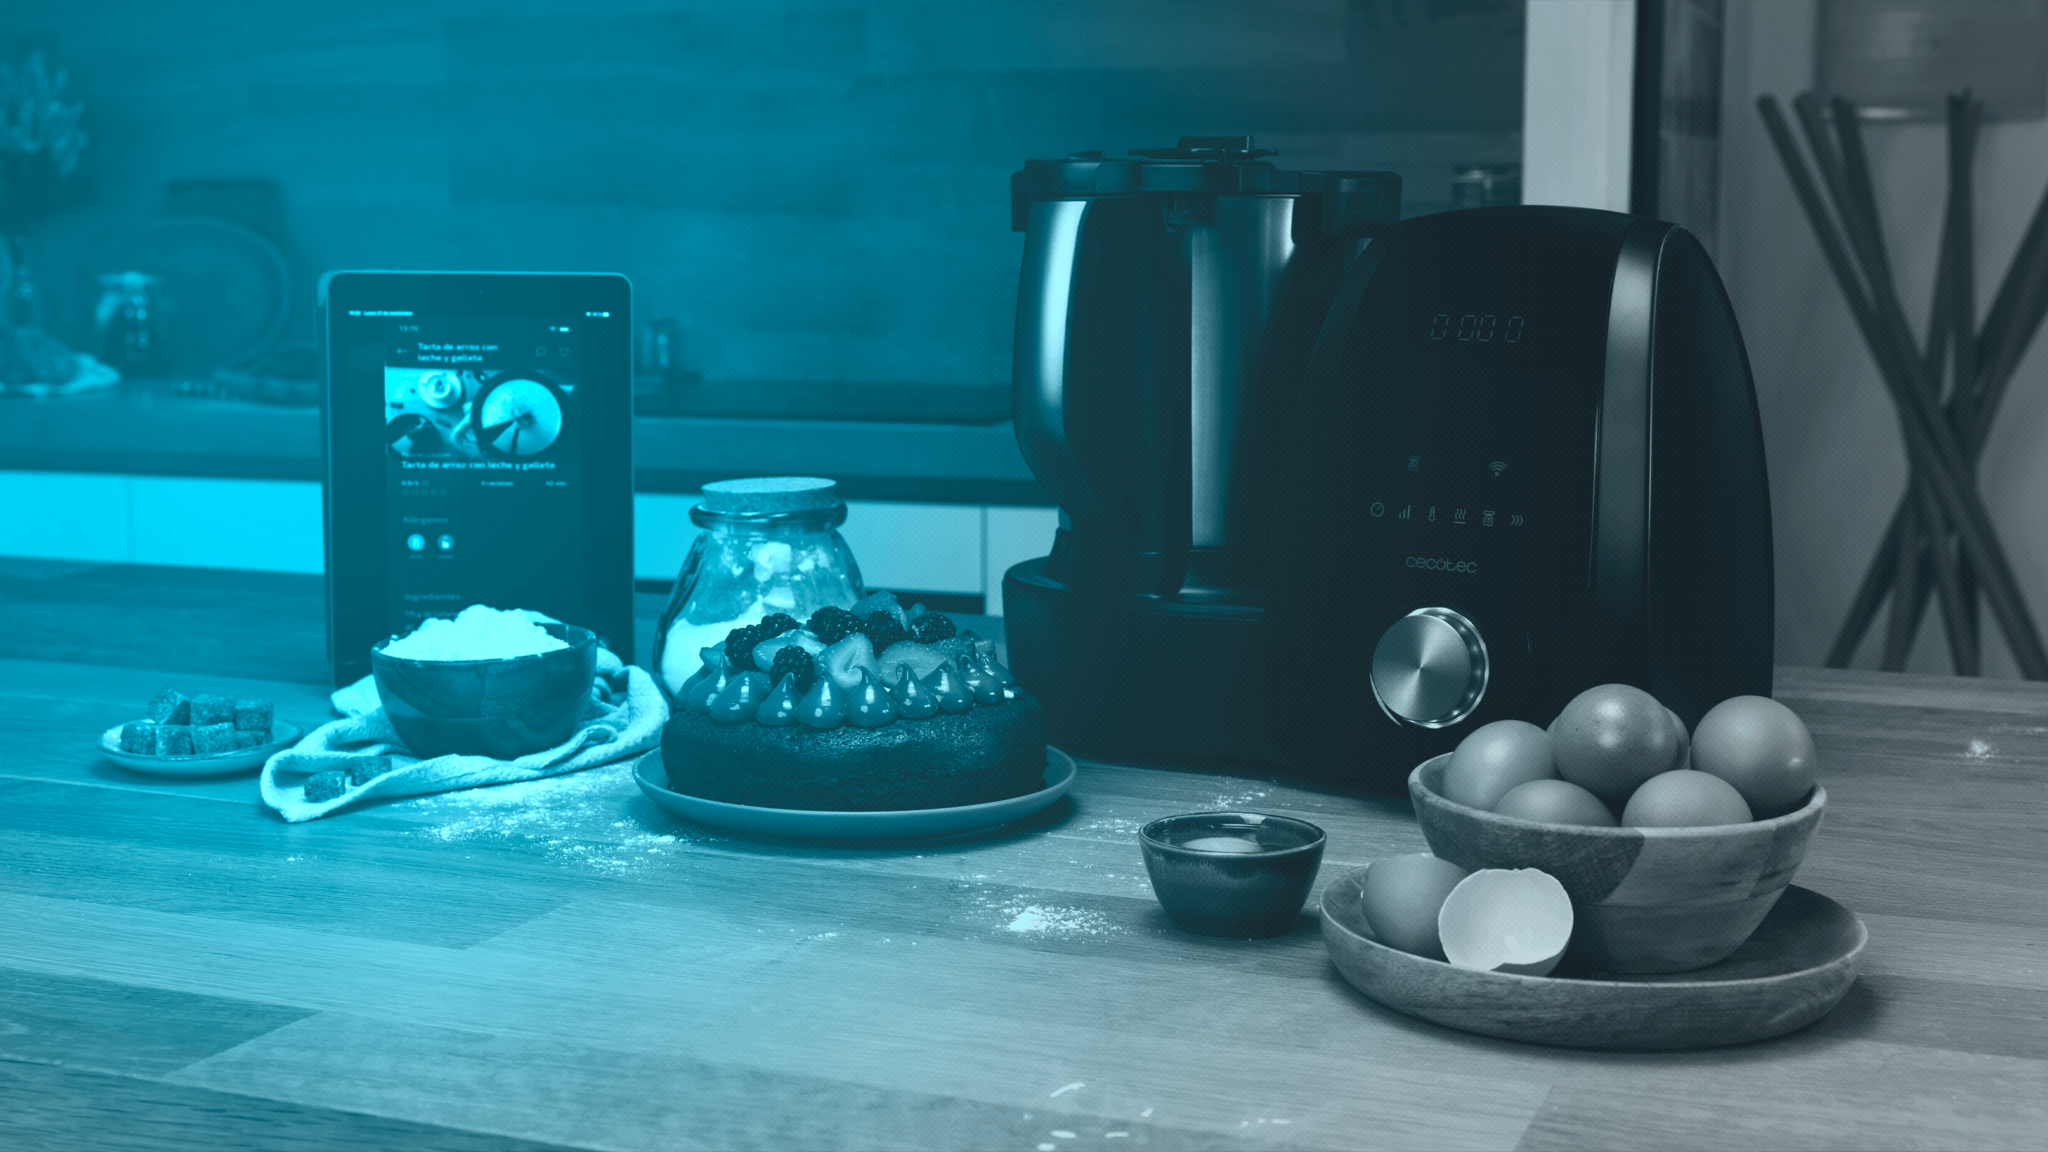 Mambo Cecotec - 🥰 Continúan las ofertas 🥰 ¡Robot de cocina Mambo 10070  por por 260,62€! Prepara las mejores recetas sin moverte del sofá gracias a  su App 😎 Date prisa, oferta